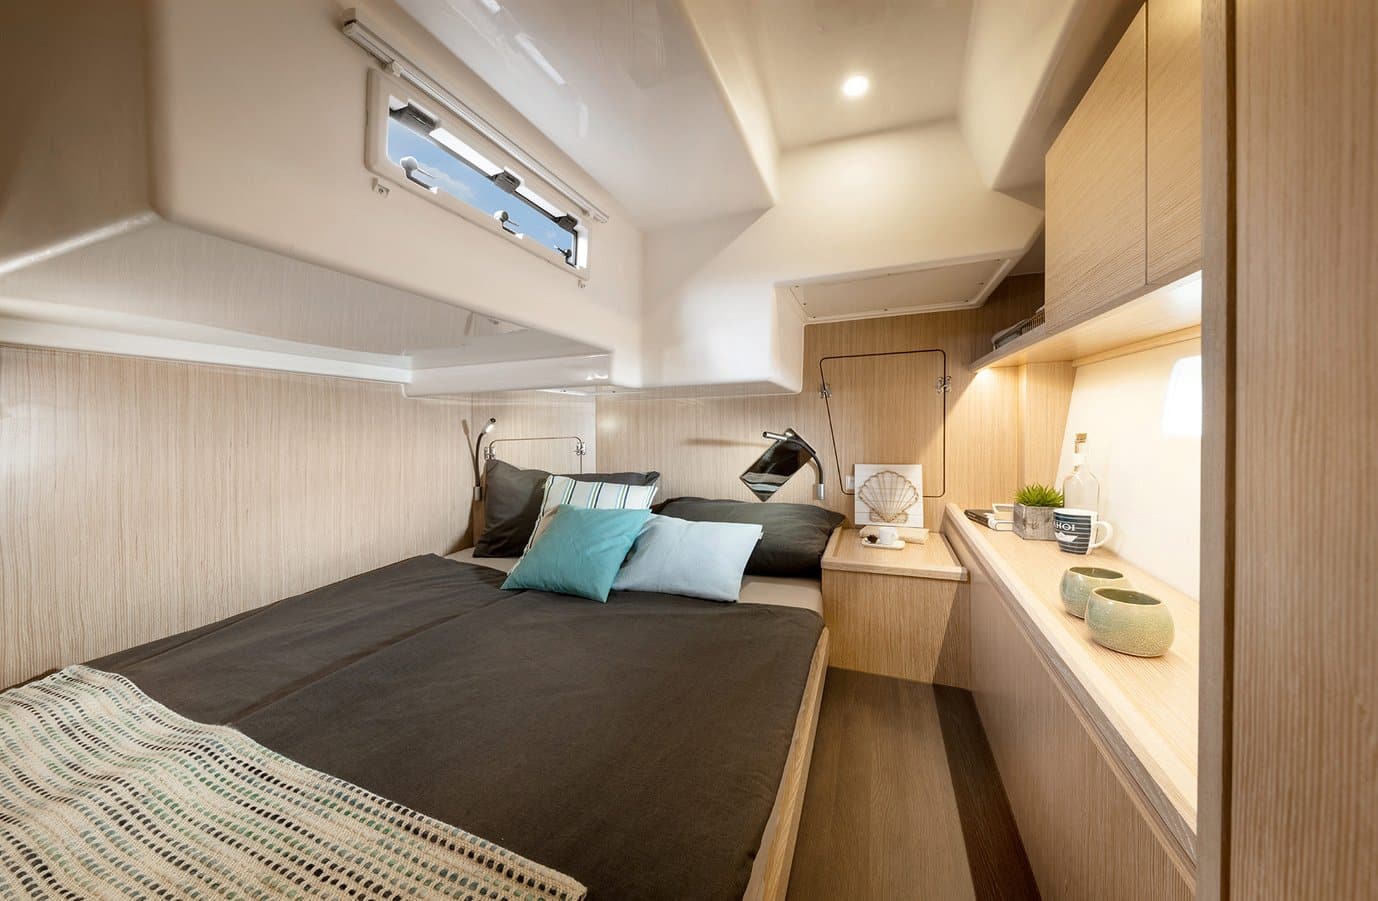 Innenansicht eines modernen Wohnmobils mit gemütlichem Bett mit Kissen, Holzschränken und kleinem Küchenbereich, beleuchtet durch natürliches Licht aus einem Bullauge.